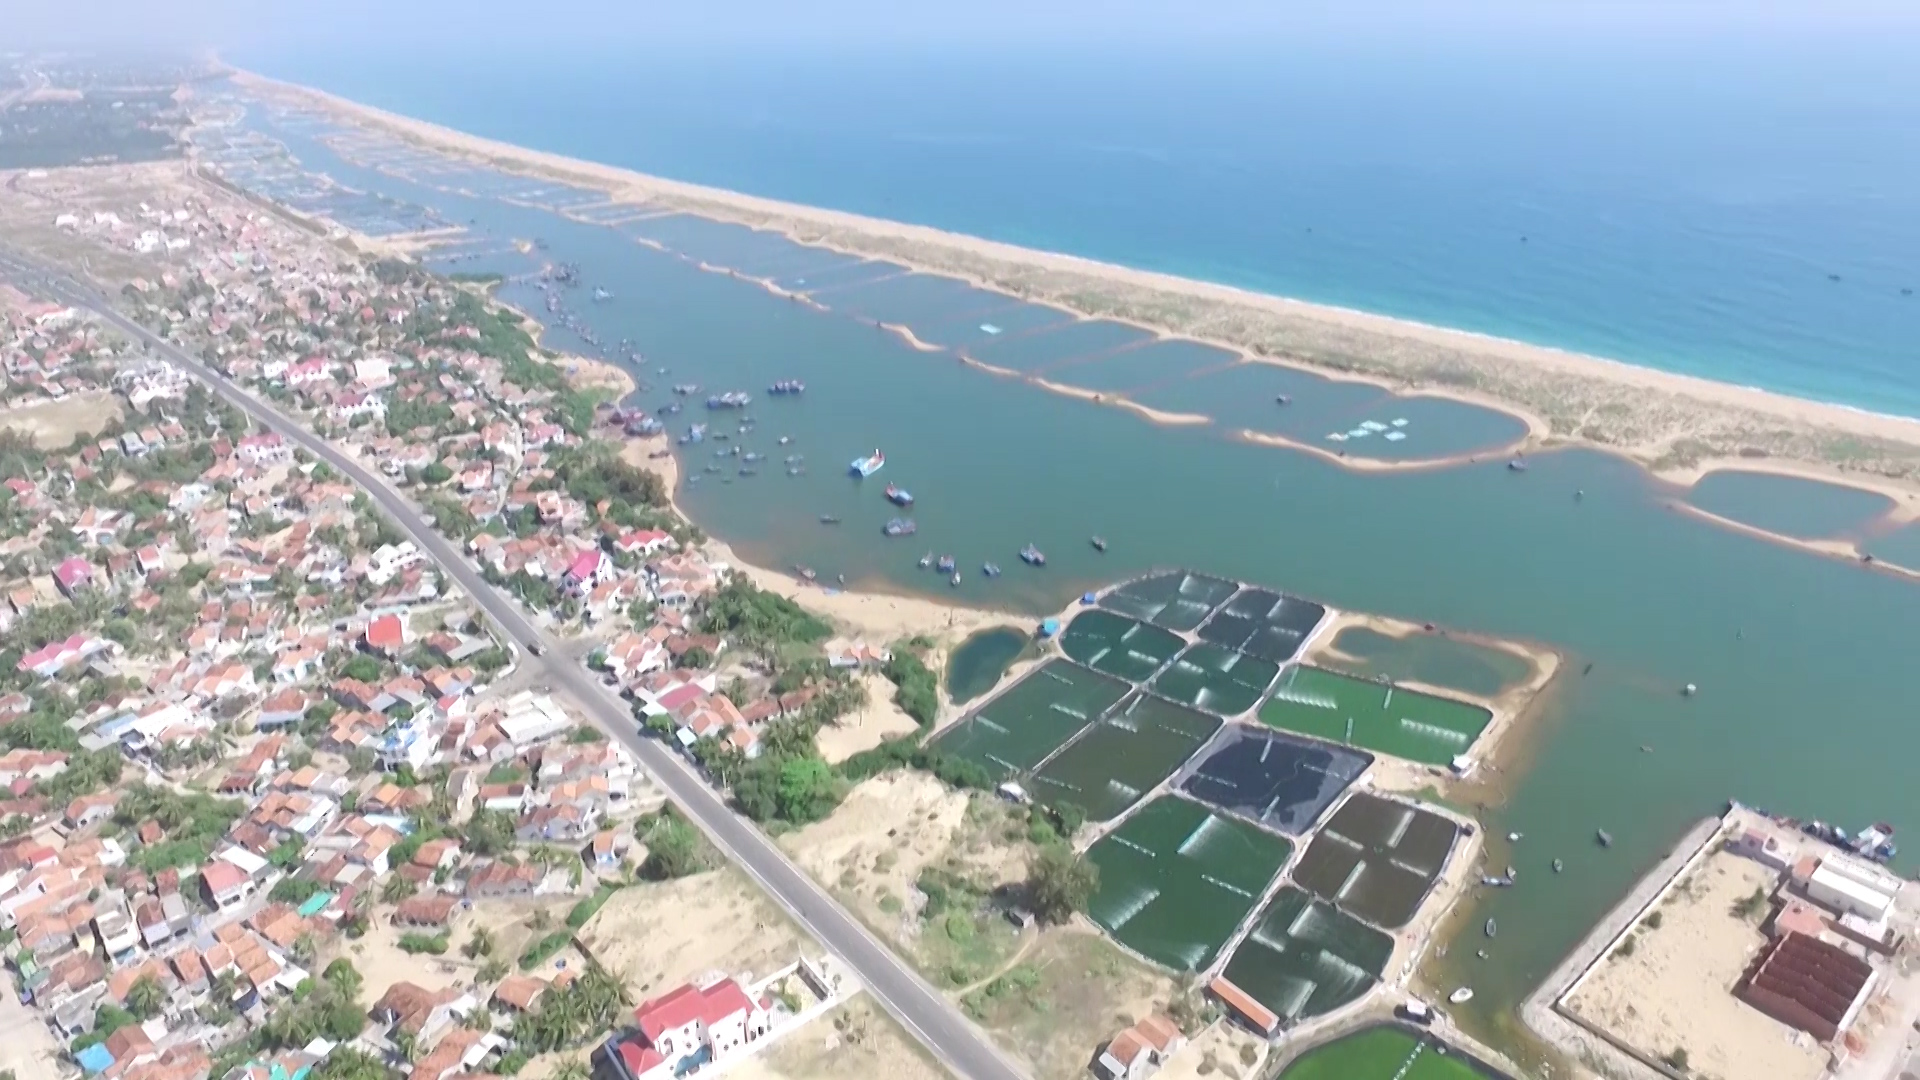 Quy hoạch tổng thể khu vực ven biển tỉnh Phú Yên, tránh chồng lấn